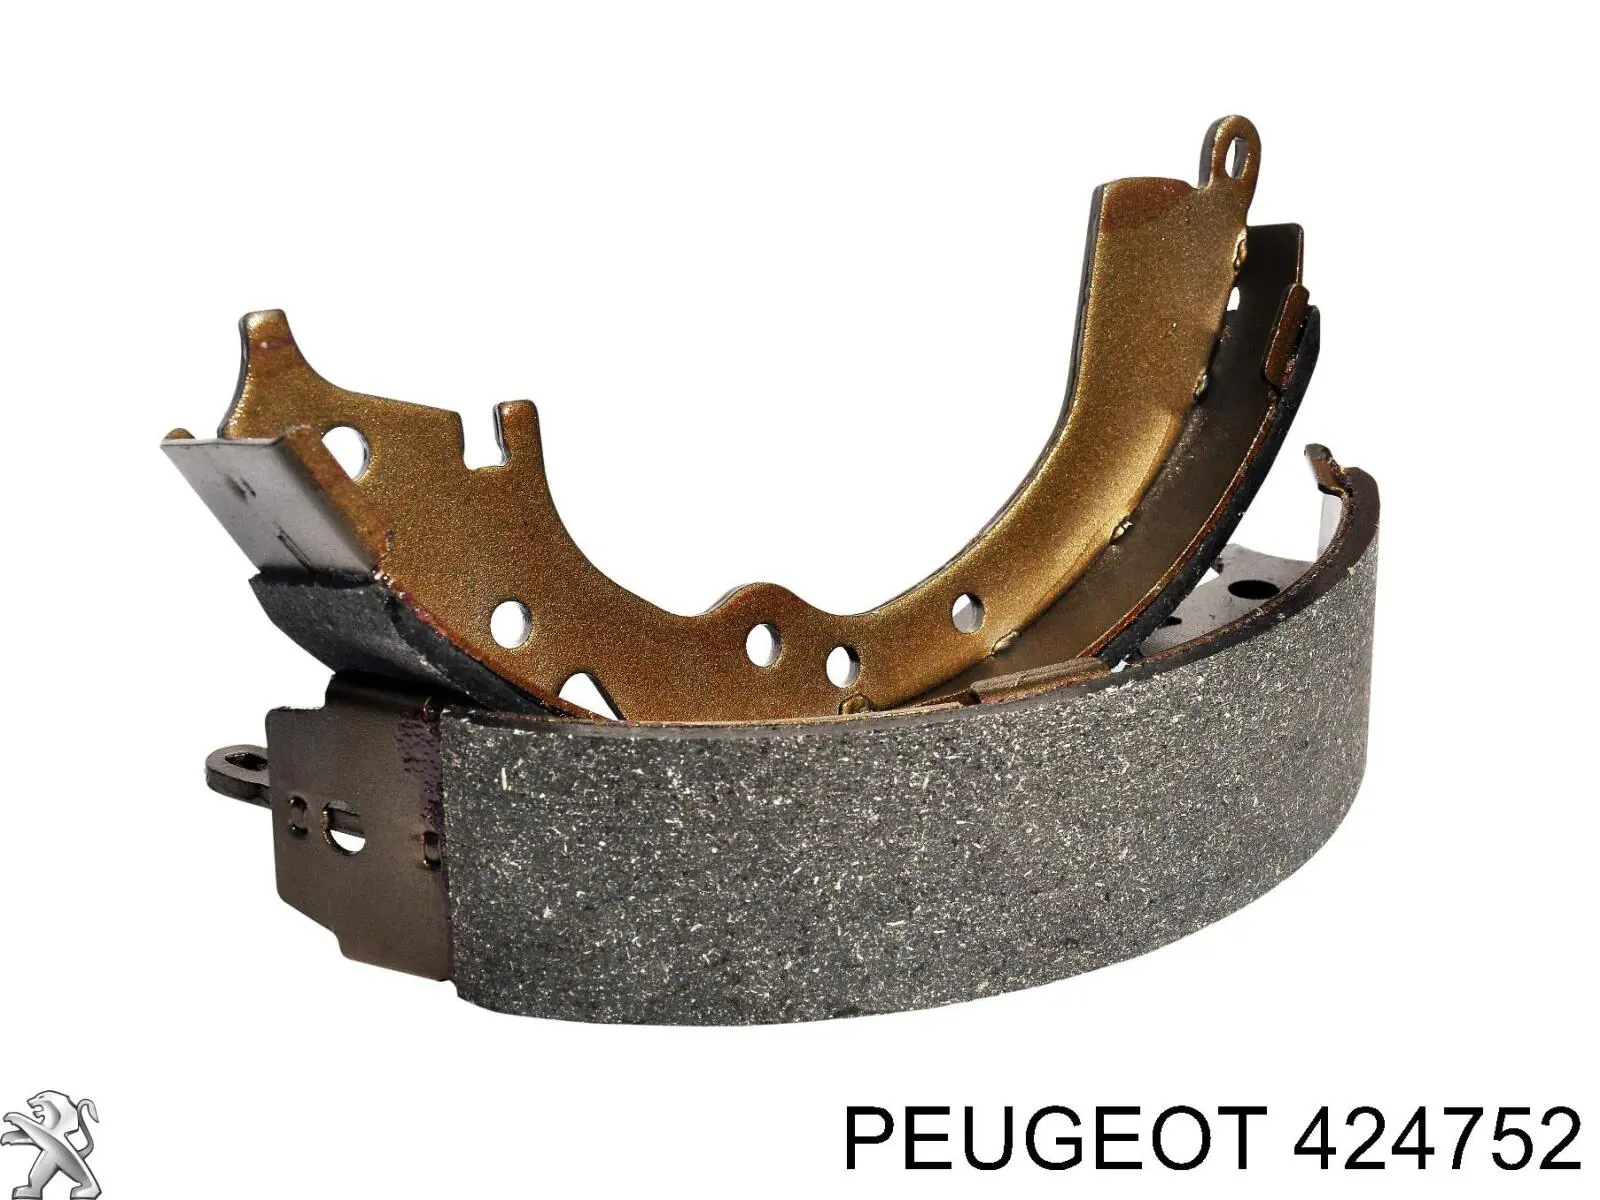 424752 Peugeot/Citroen freno de tambor trasero